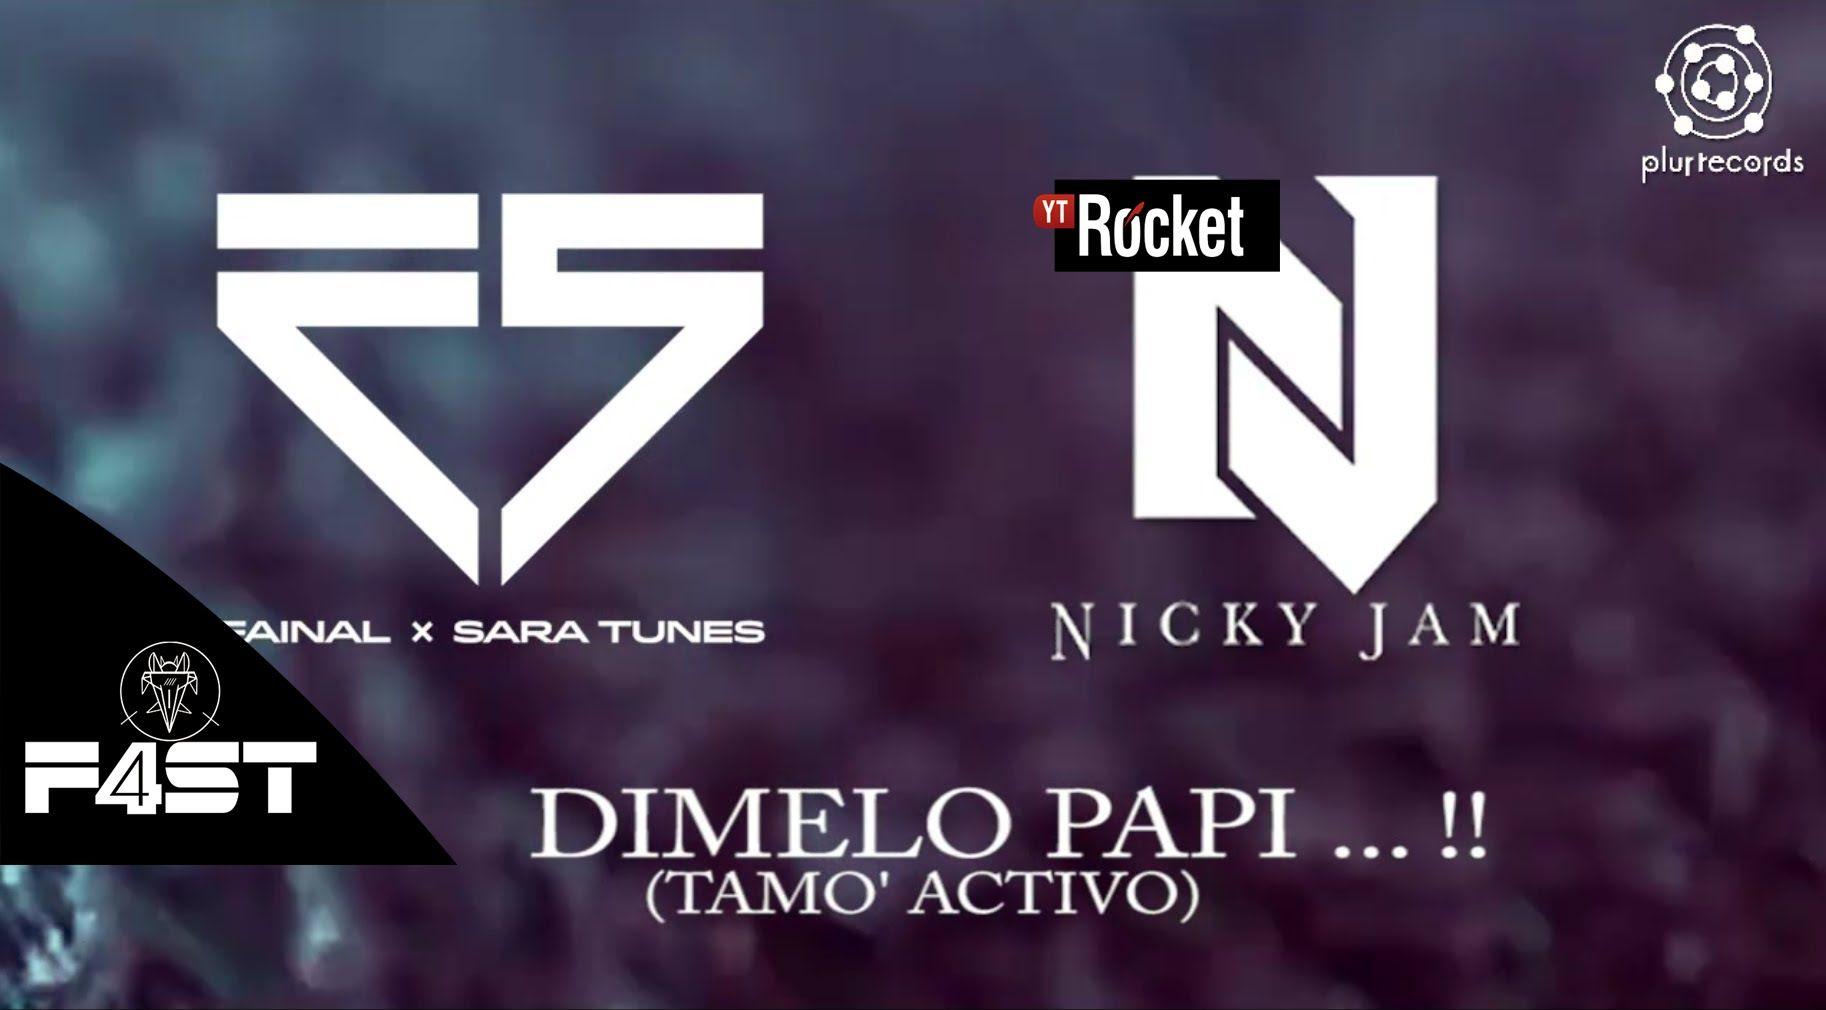 Songs In Dimelo Papi Vs Nicky Jam Youtube Jkl2K0xDslI MooMa.sh